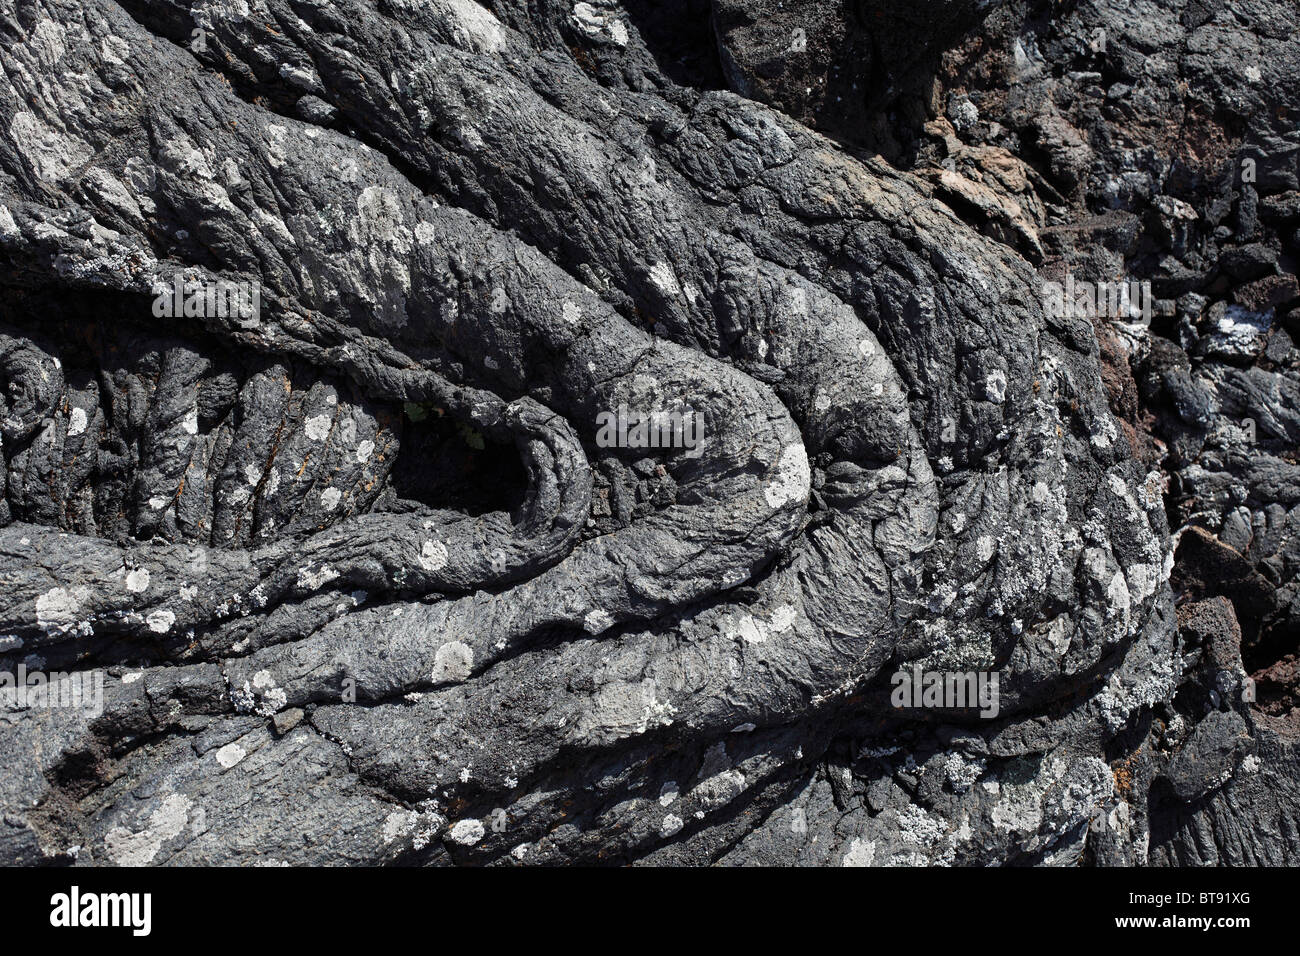 La formazione di lava nel monumento naturale 'Monumento naturale del tubo volcanico de Todoque' di Las Manchas, La Palma Foto Stock